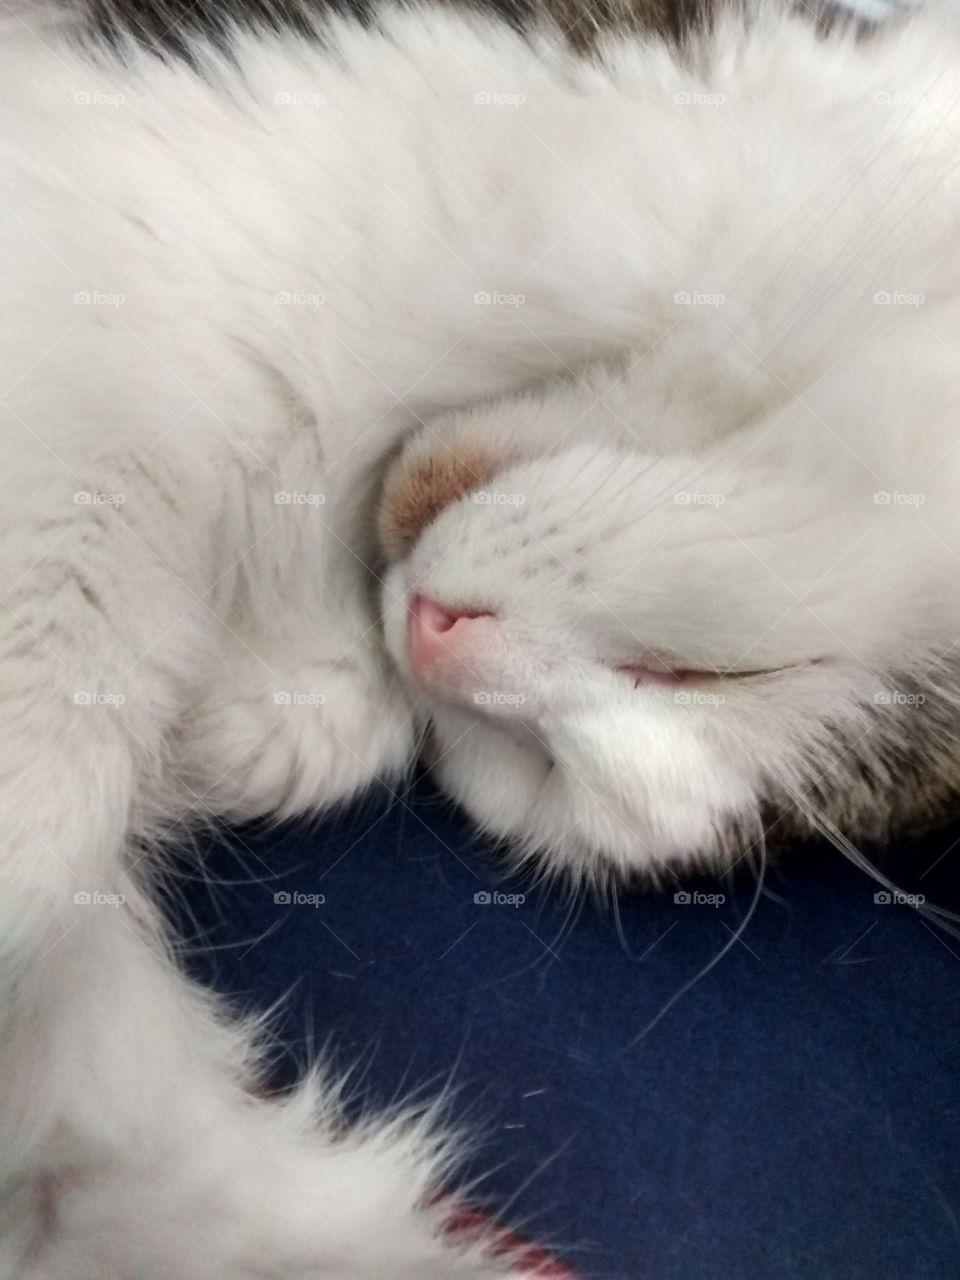 sleeping cat